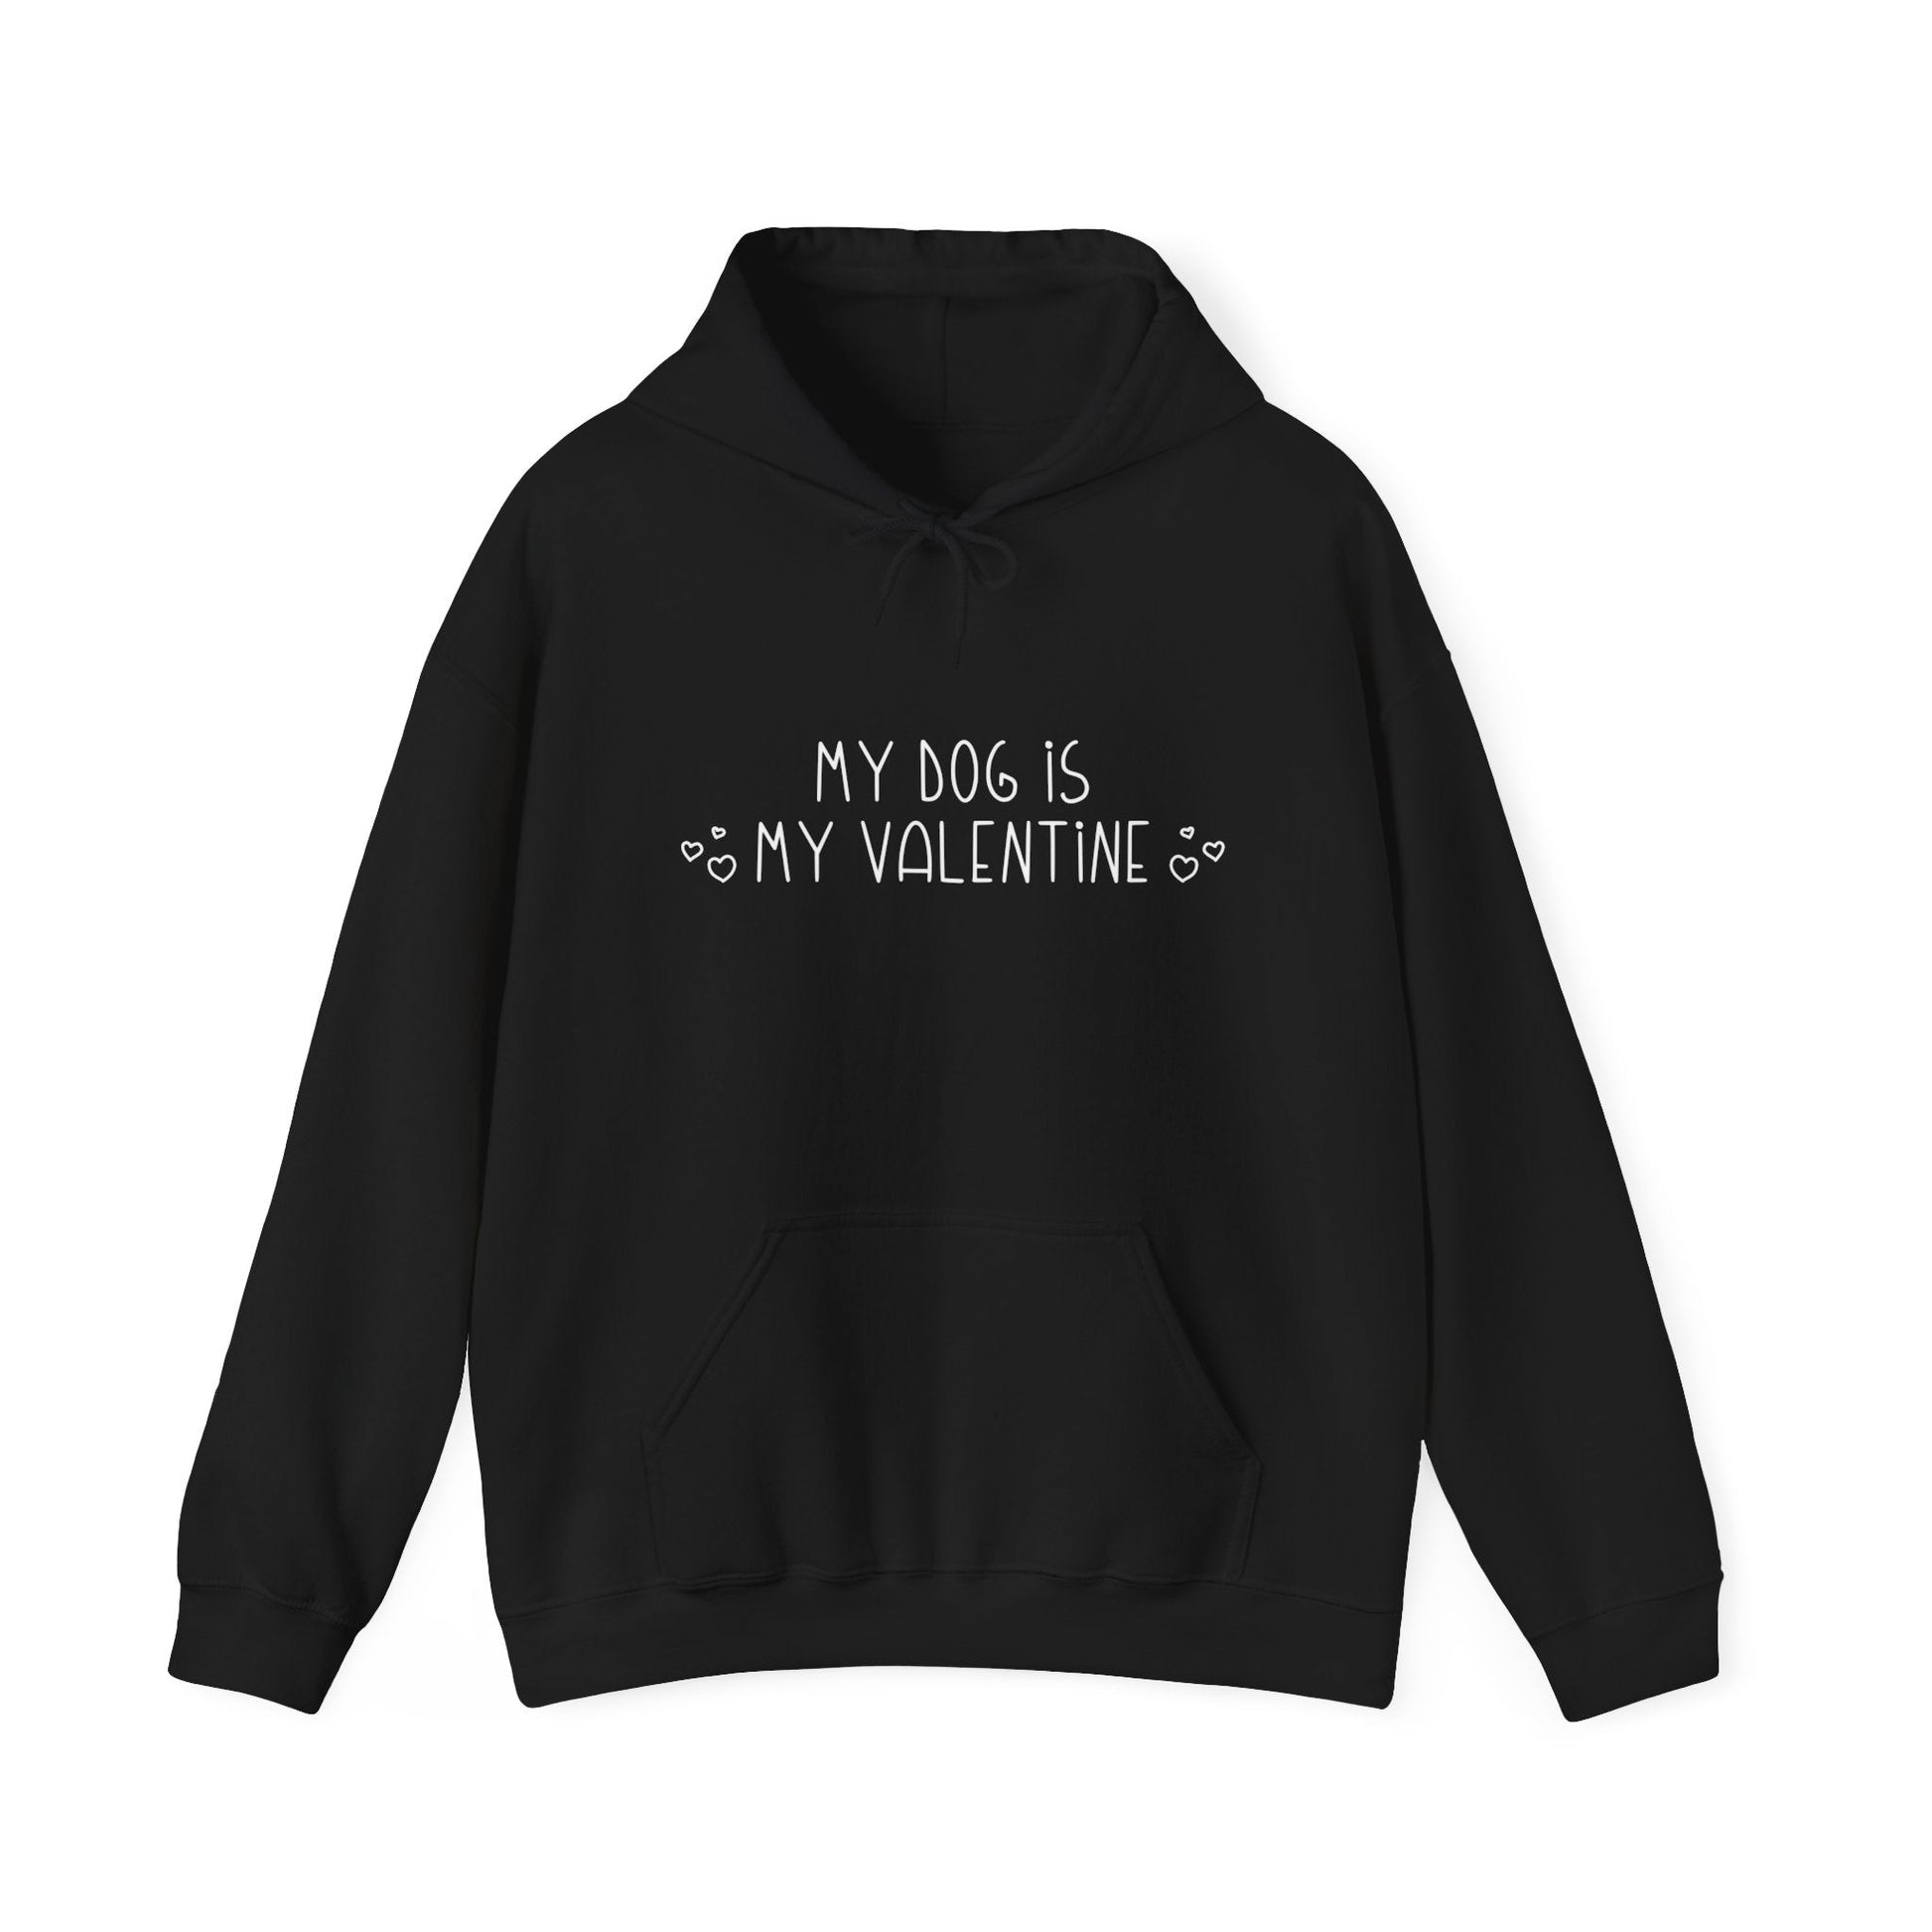 My Dog Is My Valentine | Hooded Sweatshirt - Detezi Designs-48976760149929326203